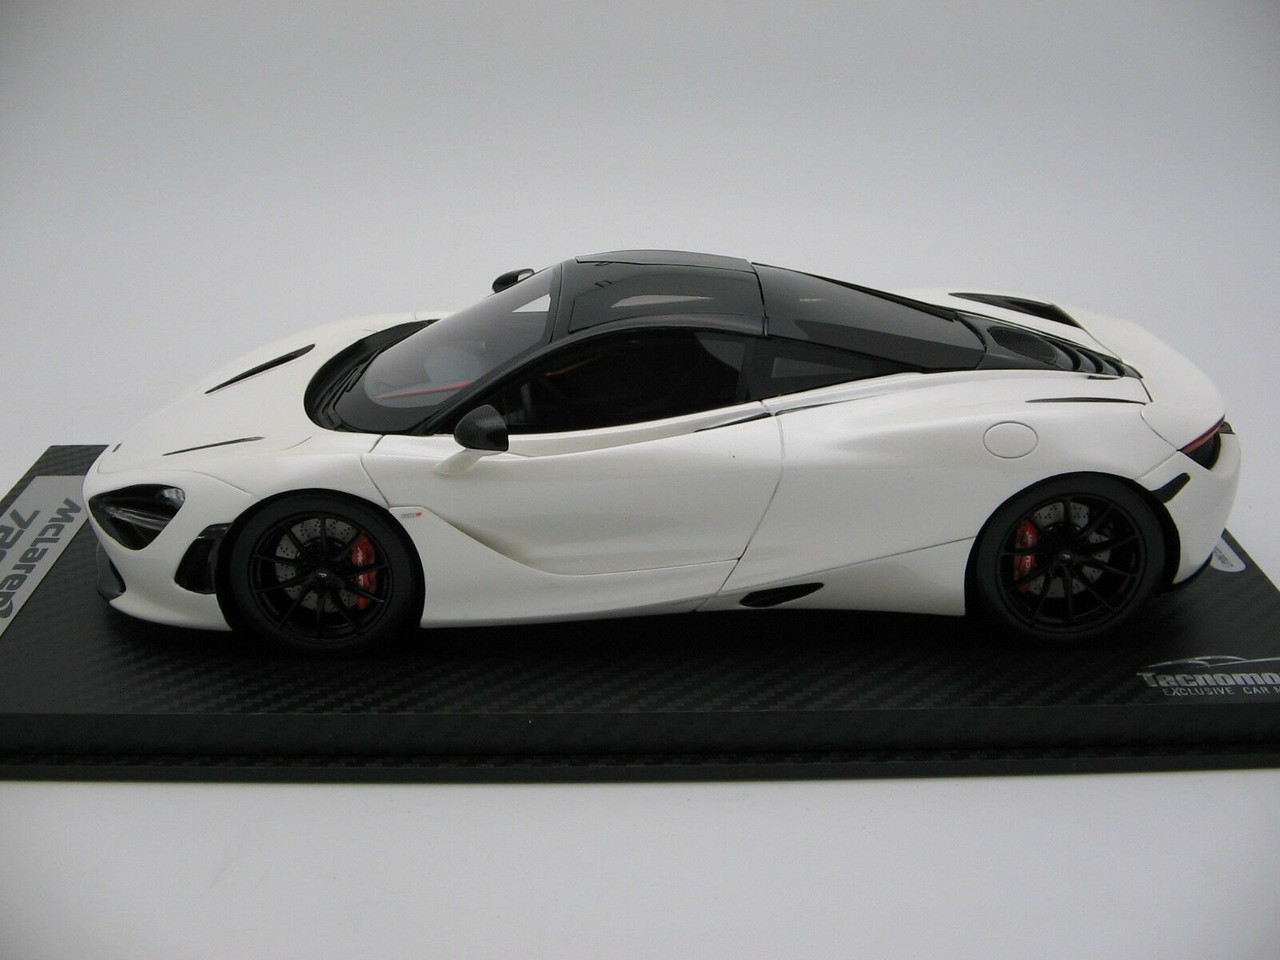 1/18 Tecnomodel McLaren 720S (White) Resin Car Model Limited